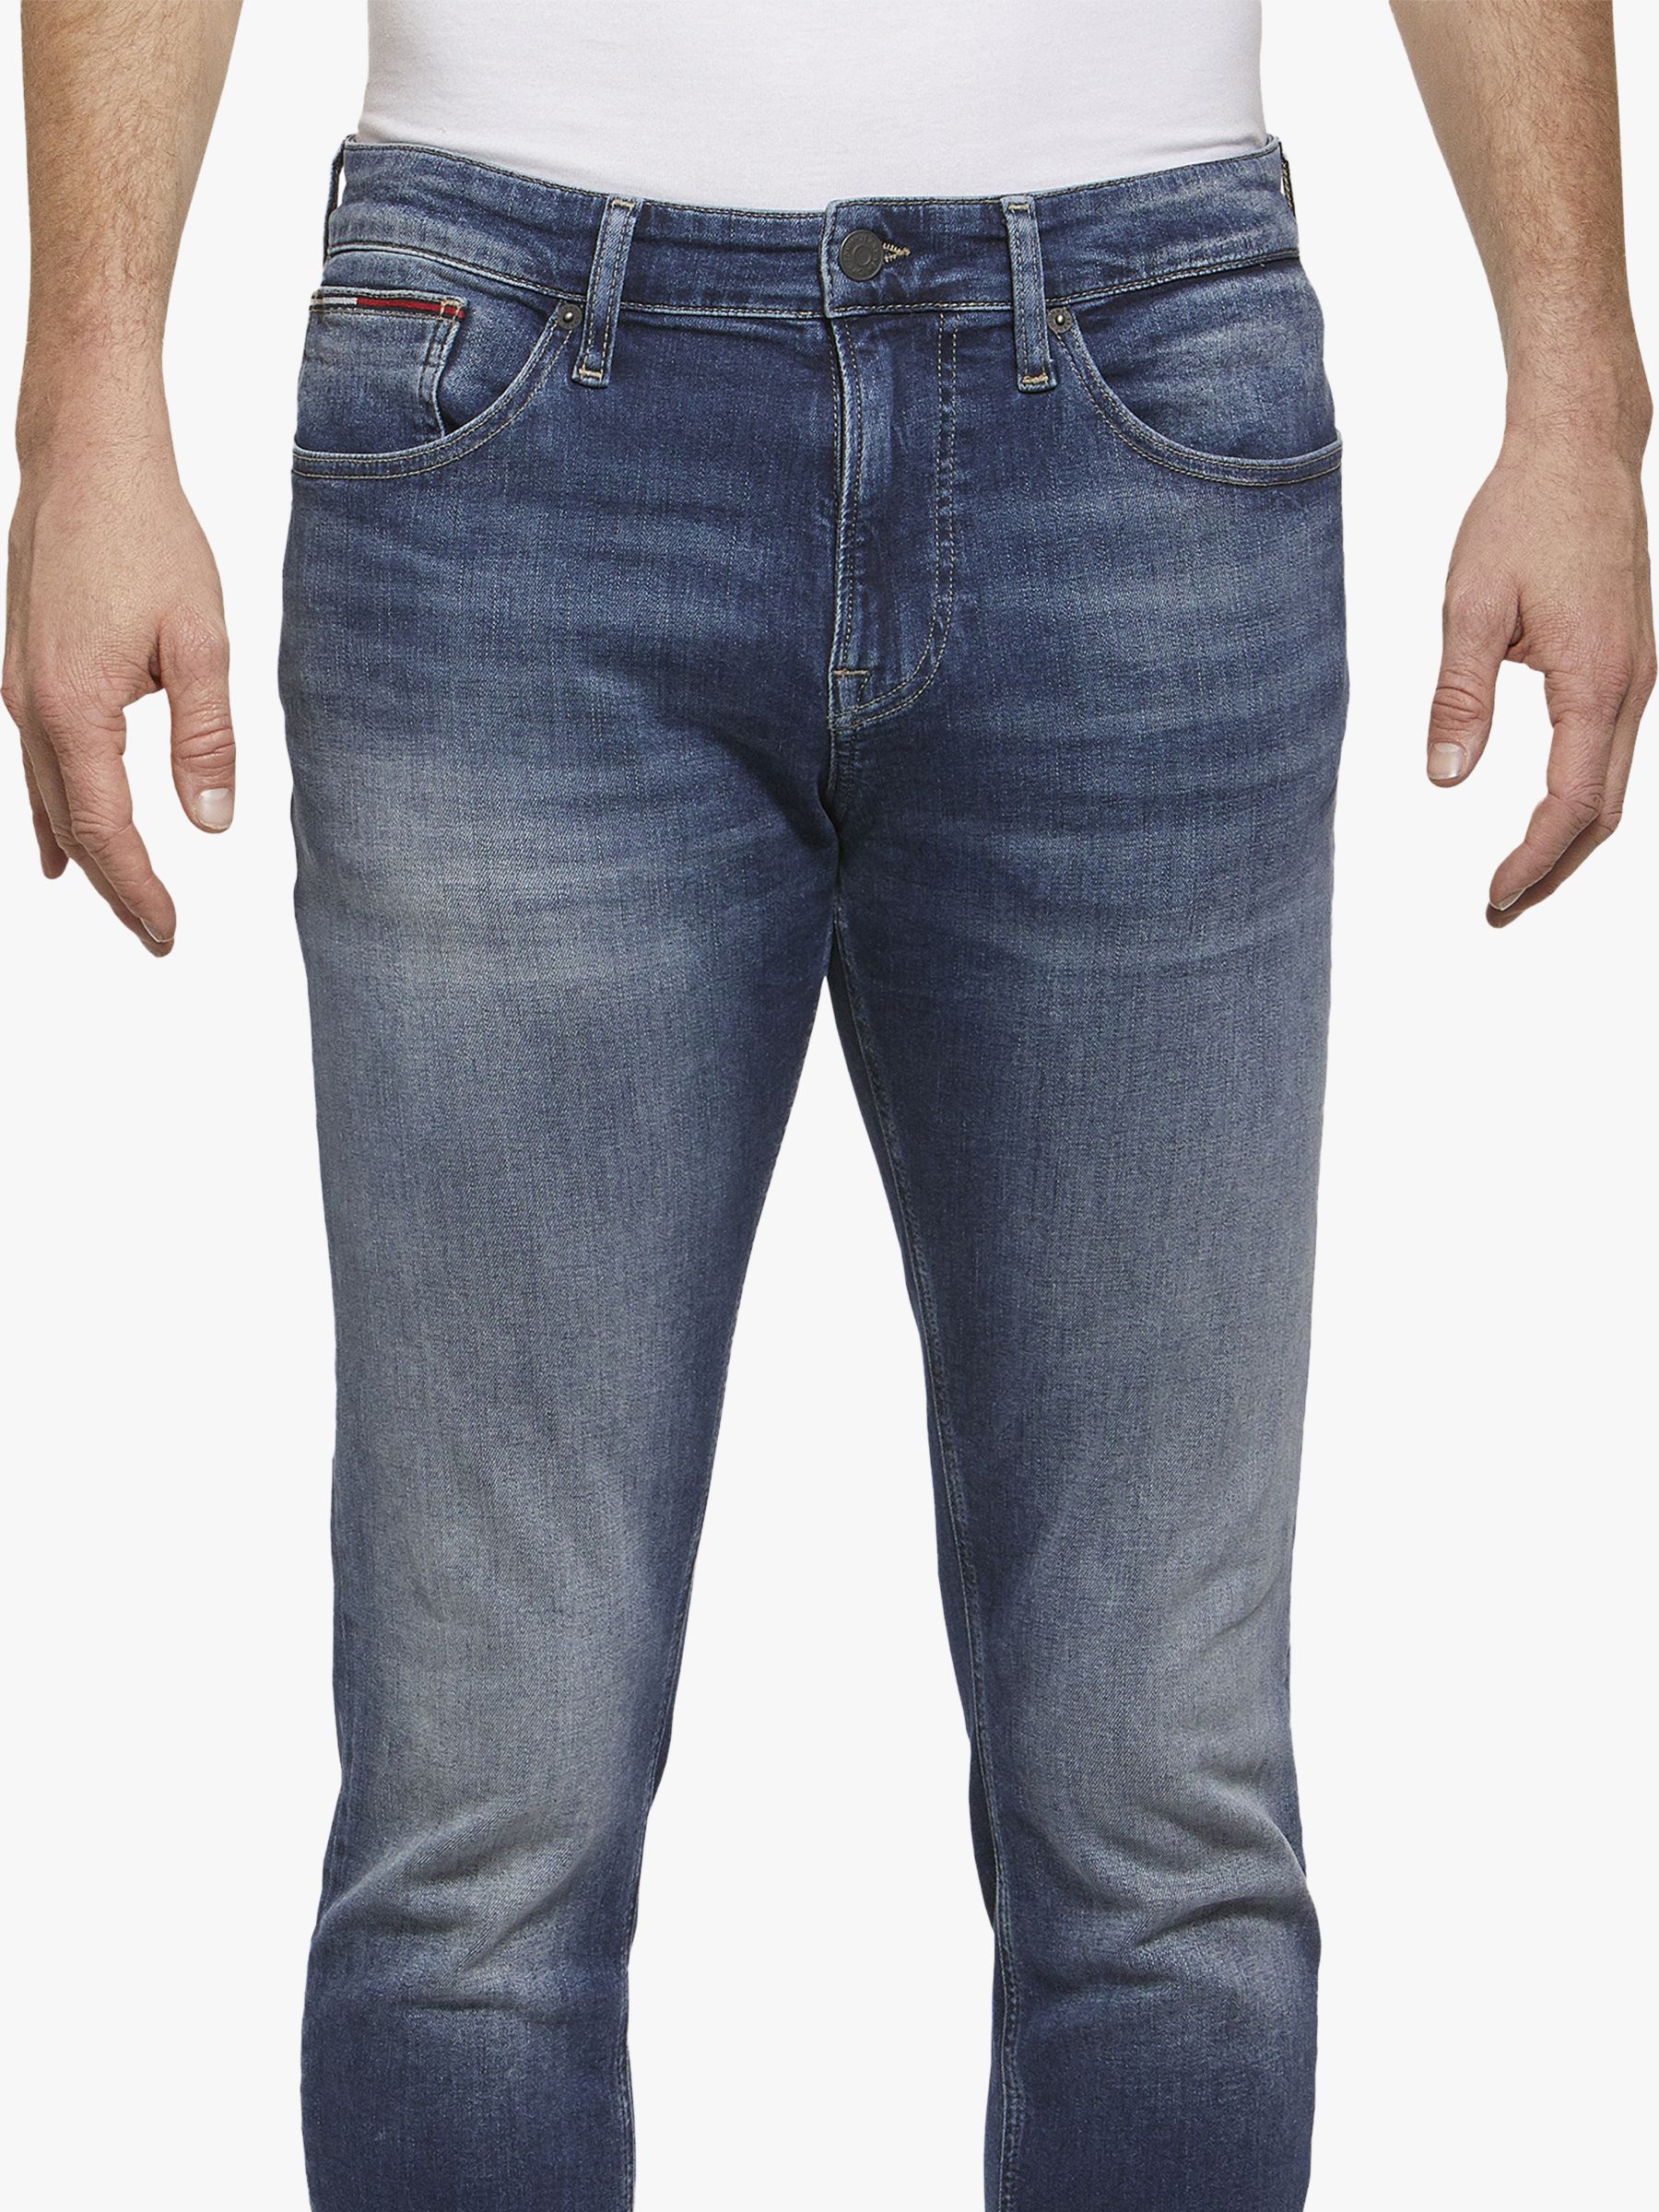 tommy hilfiger jeans slim tapered steve